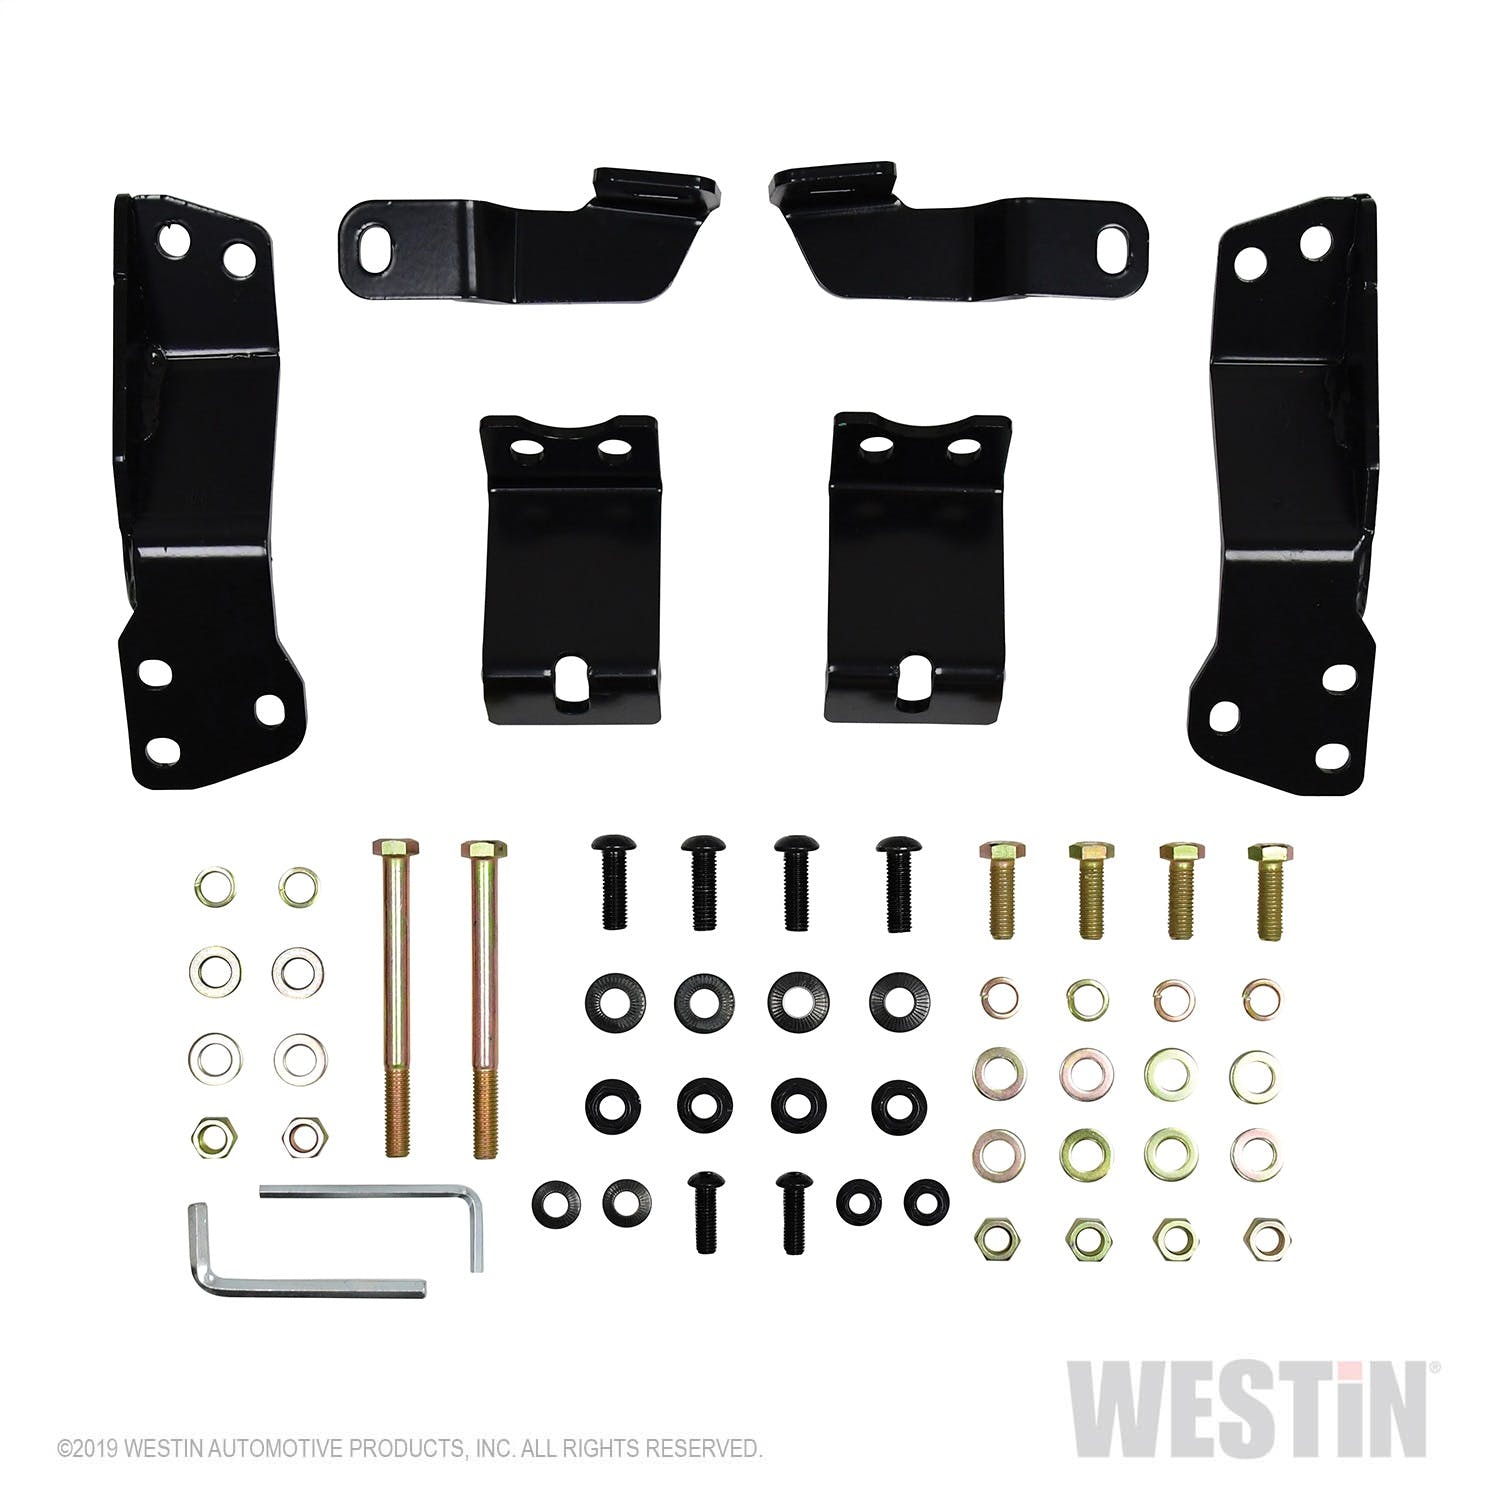 Westin Automotive 57-3875 HDX Grille Guard Black